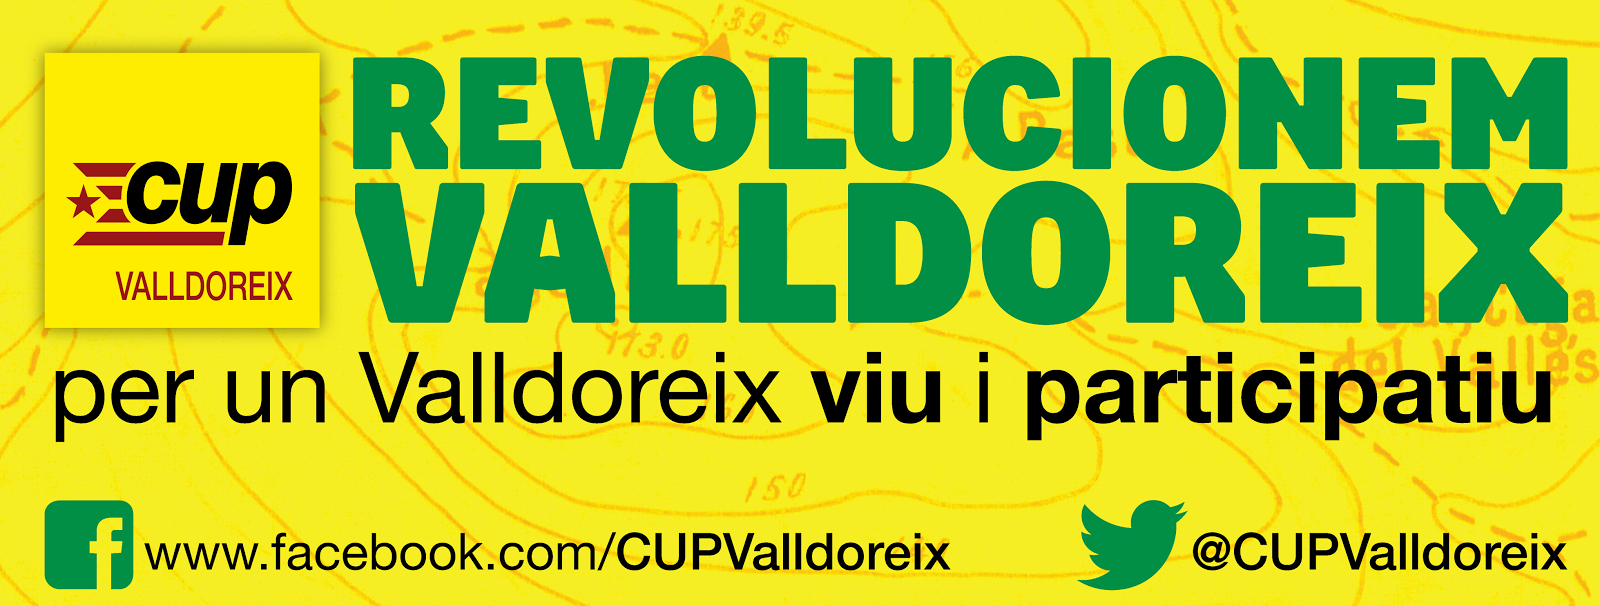 CUP Valldoreix